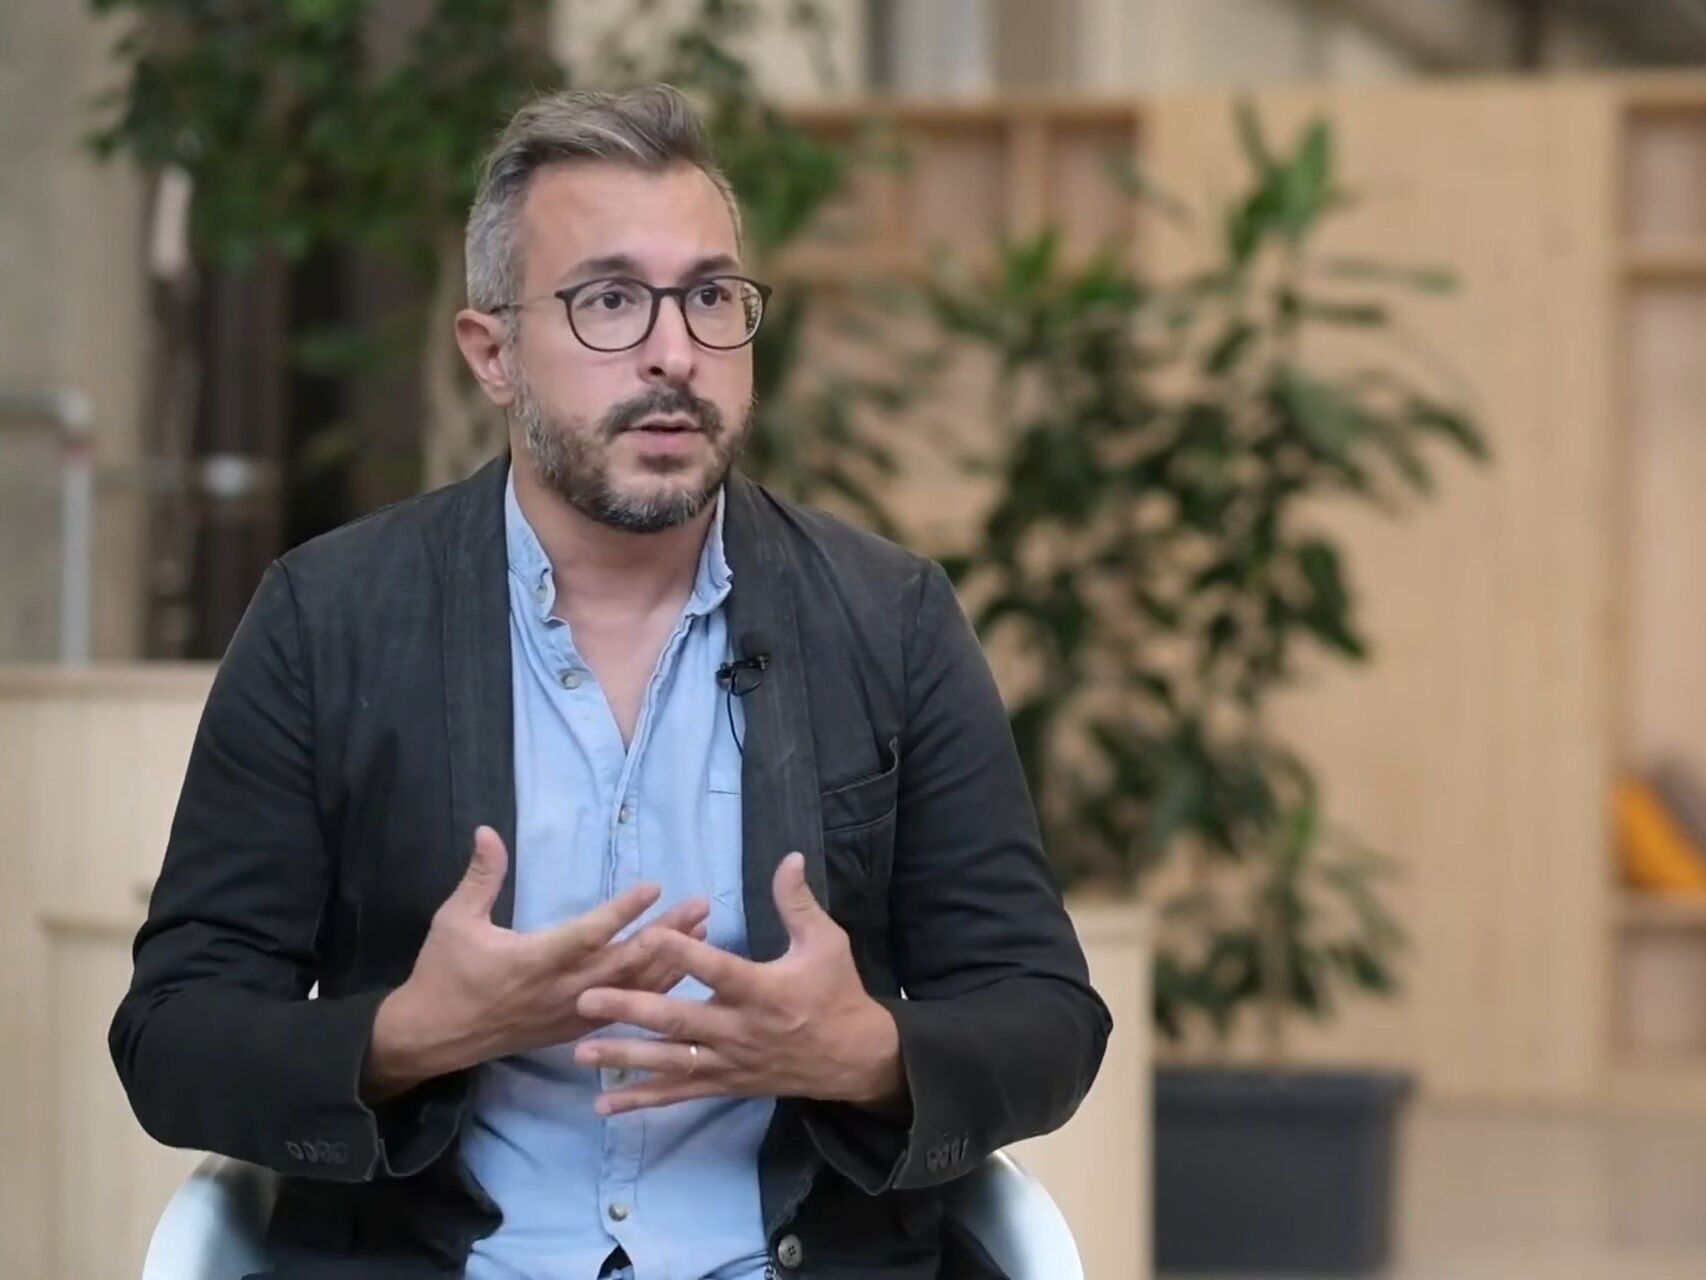 Davide Lugli: предприемачът Davide Lugli е собственик и главен изпълнителен директор на компанията Skipper в Кампания, както и създател на приложението Nebula